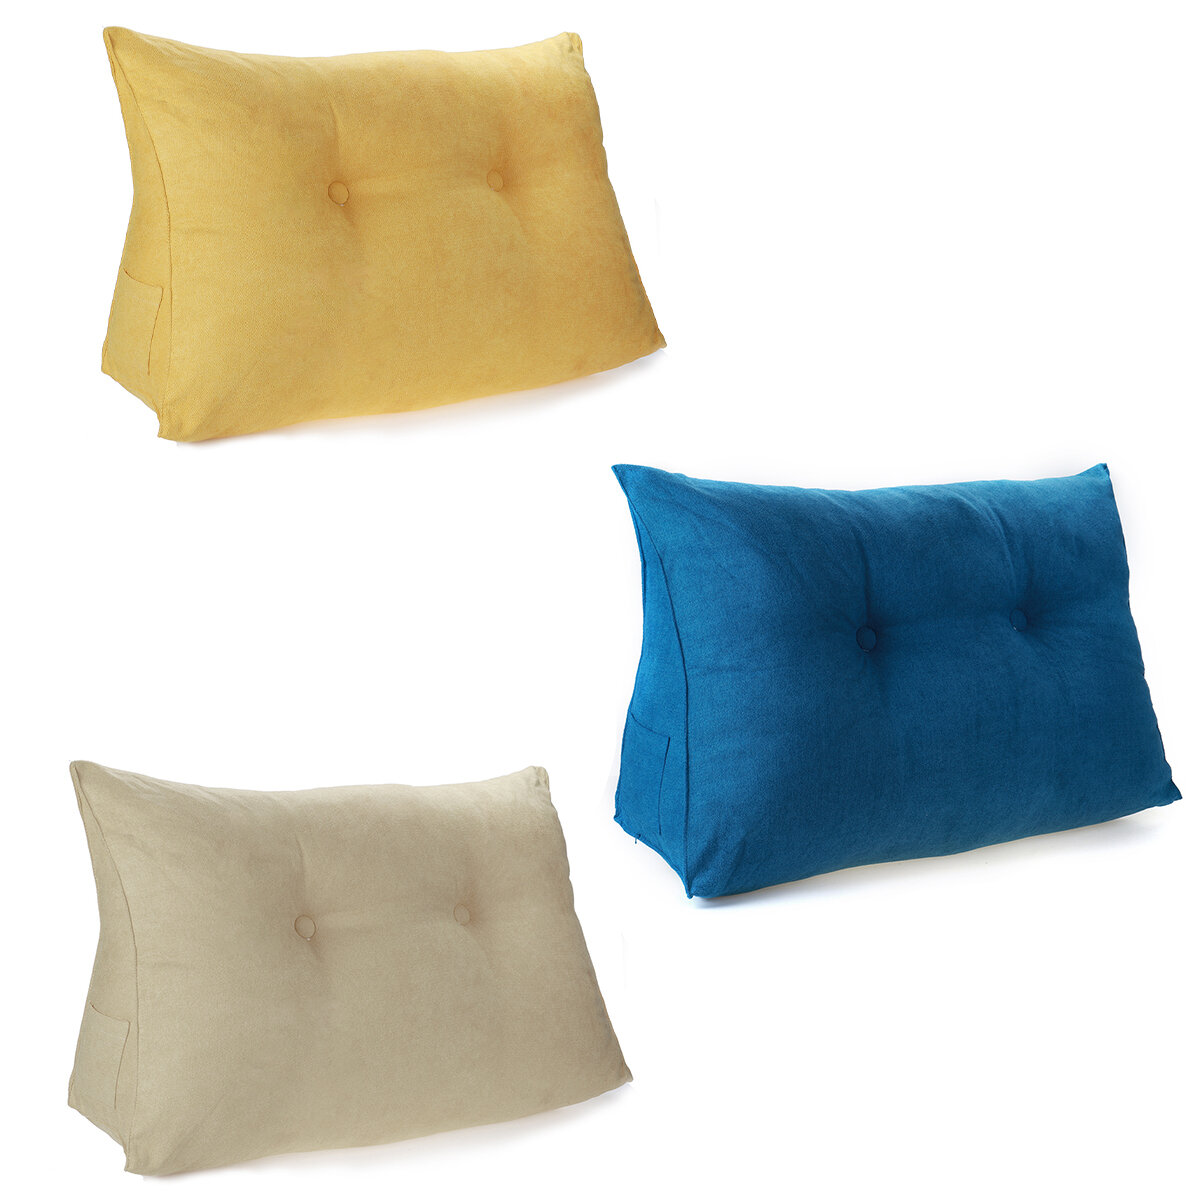 

33*27*20cm Triangular Wedge Lumbar Pillow Support Cushion Backrest Bolster Soft Headboard